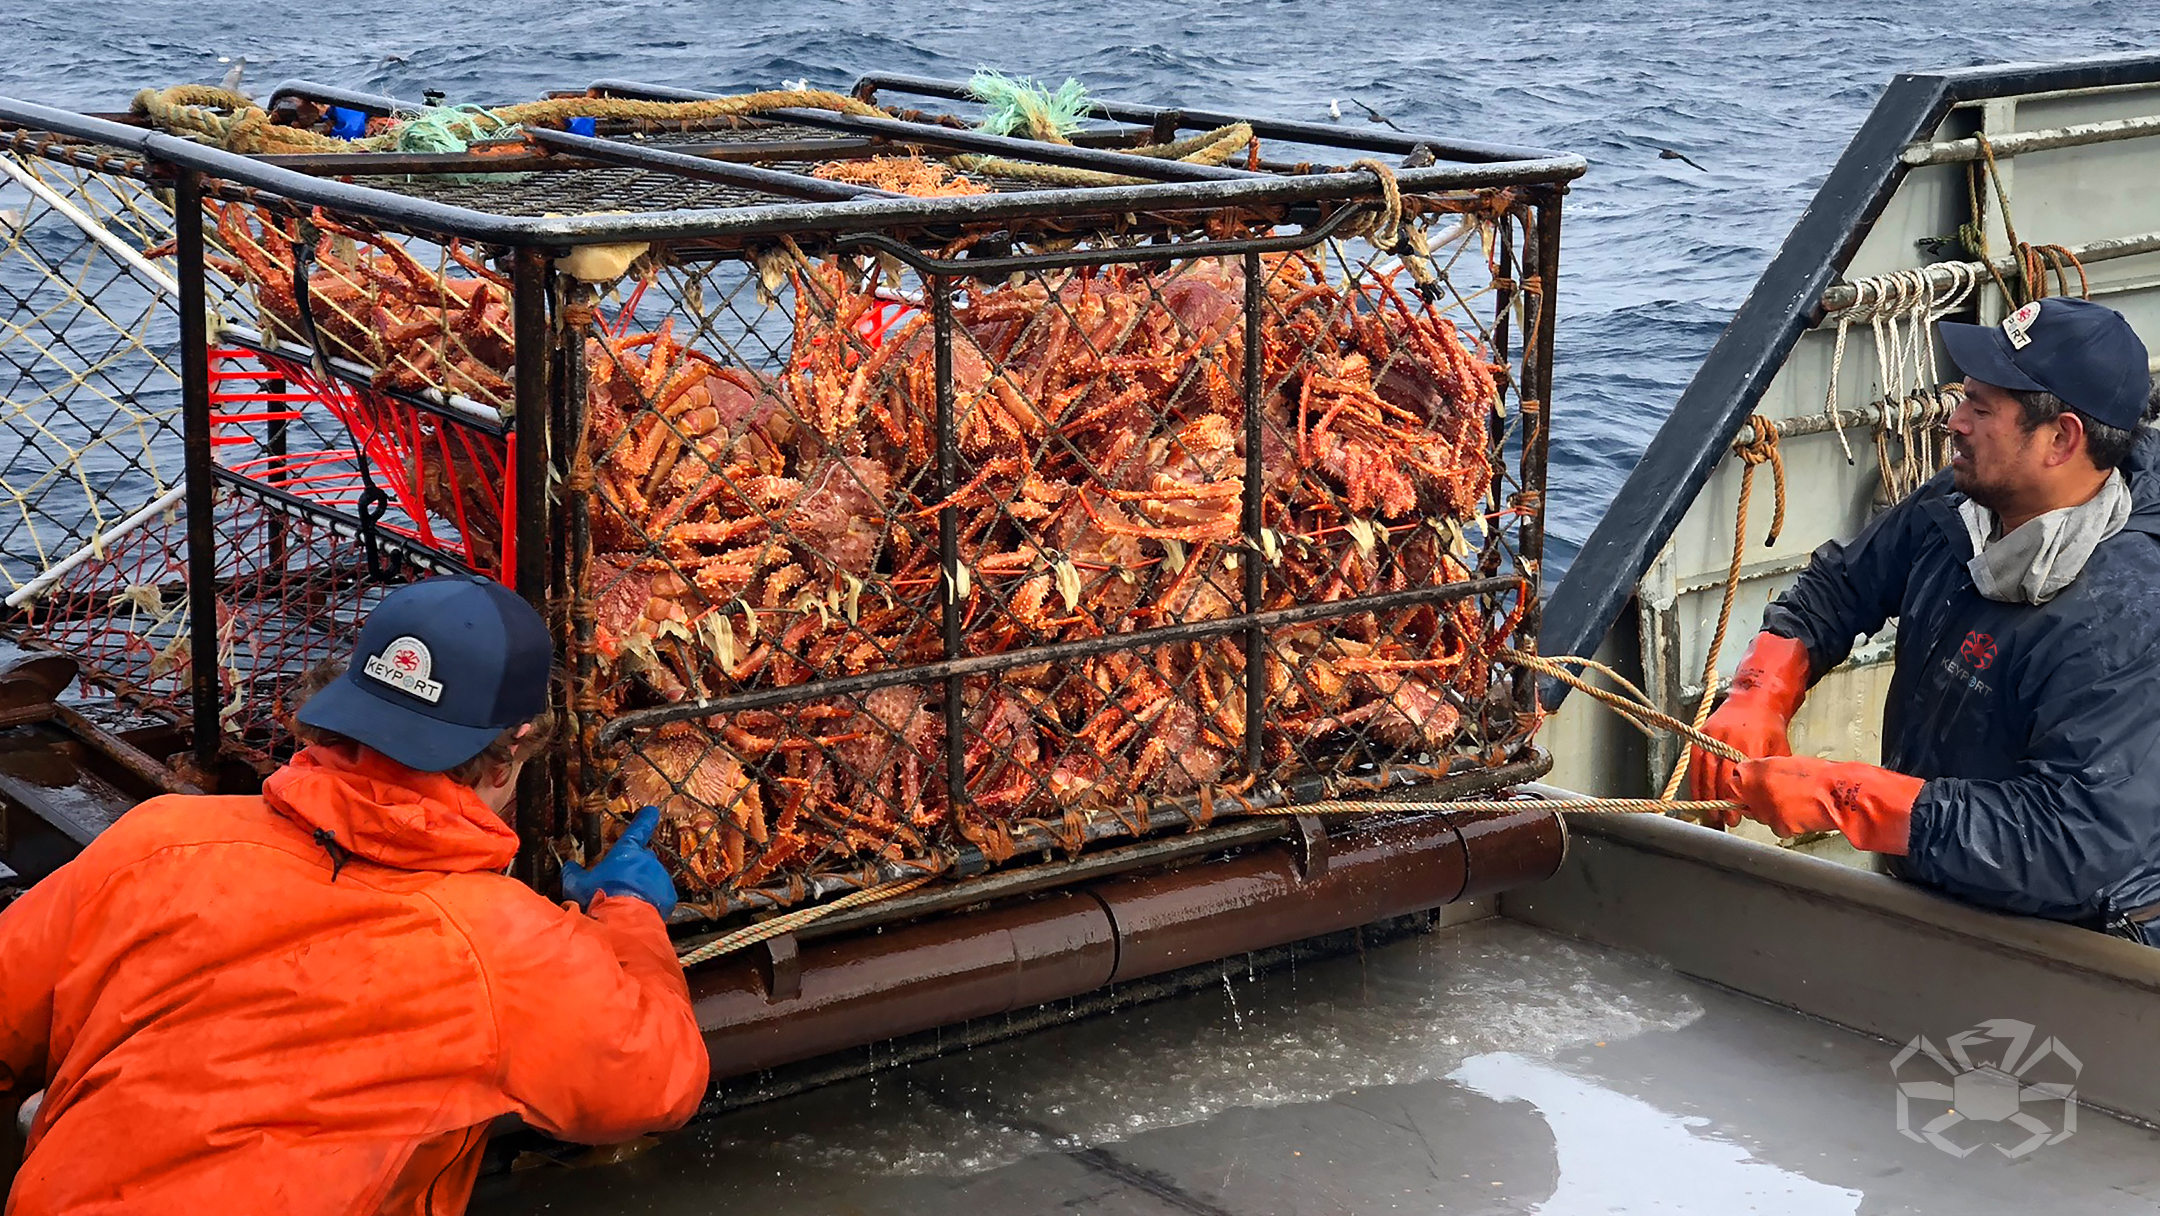 Промысел краба. Ловля крабов на Аляске. Монако сельское хозяйство рыболовство. Alaskan King Crab Fishing. Ловля крабов на Аляске Дискавери.